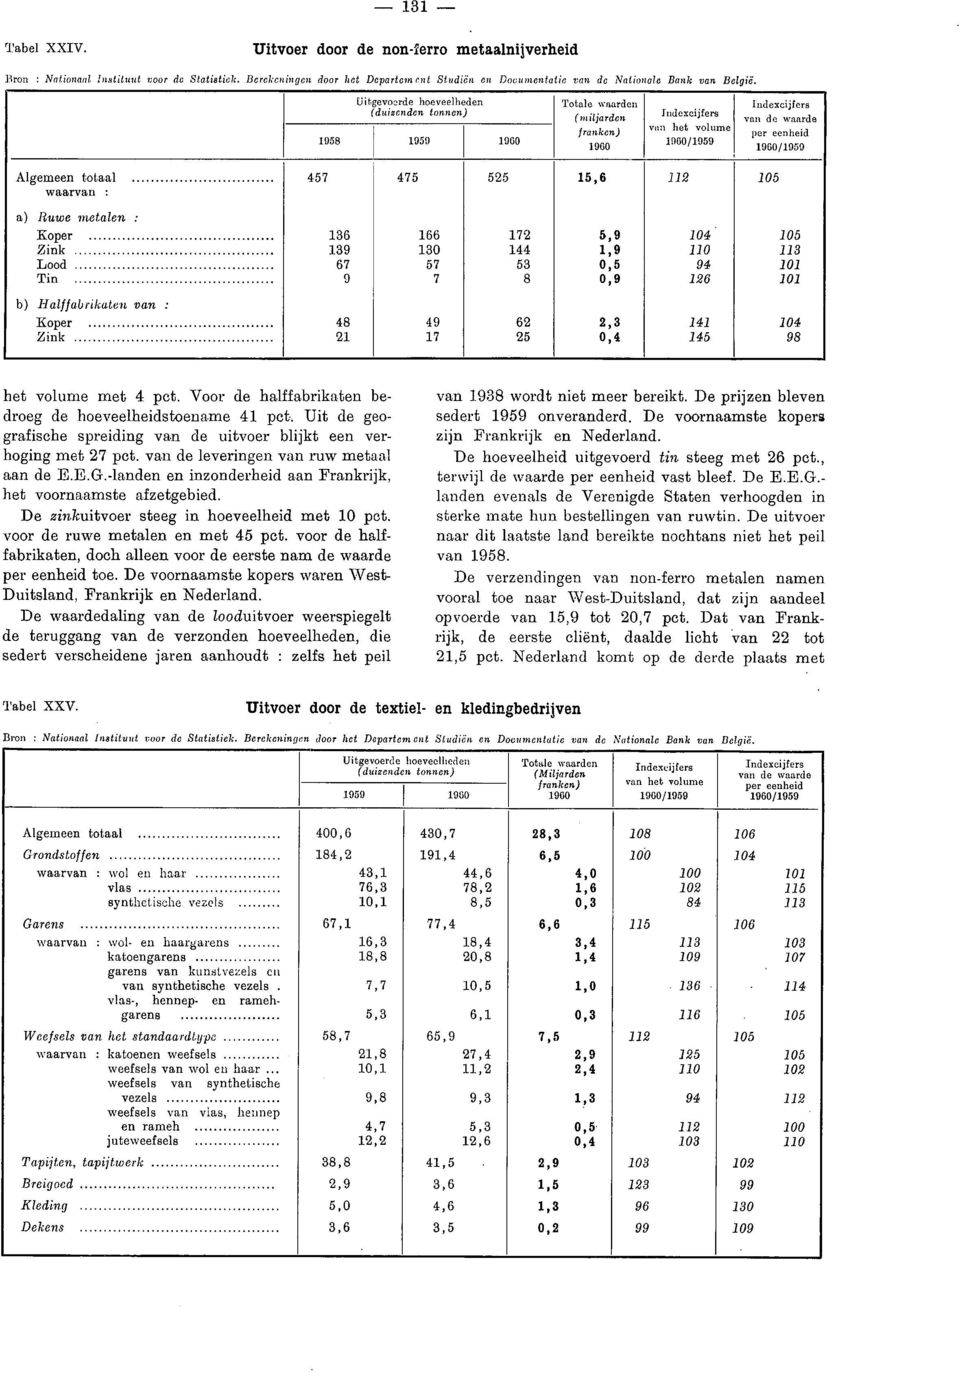 Uitgevoerde hoeveelheden (duizenden tonnen) 1958 1959 Totale waarden (miljarden franken) indexcijfers van het volume /1959 indexcijfers van de waarde per eenheid /1959 Algemeen totaal waarvan : 457